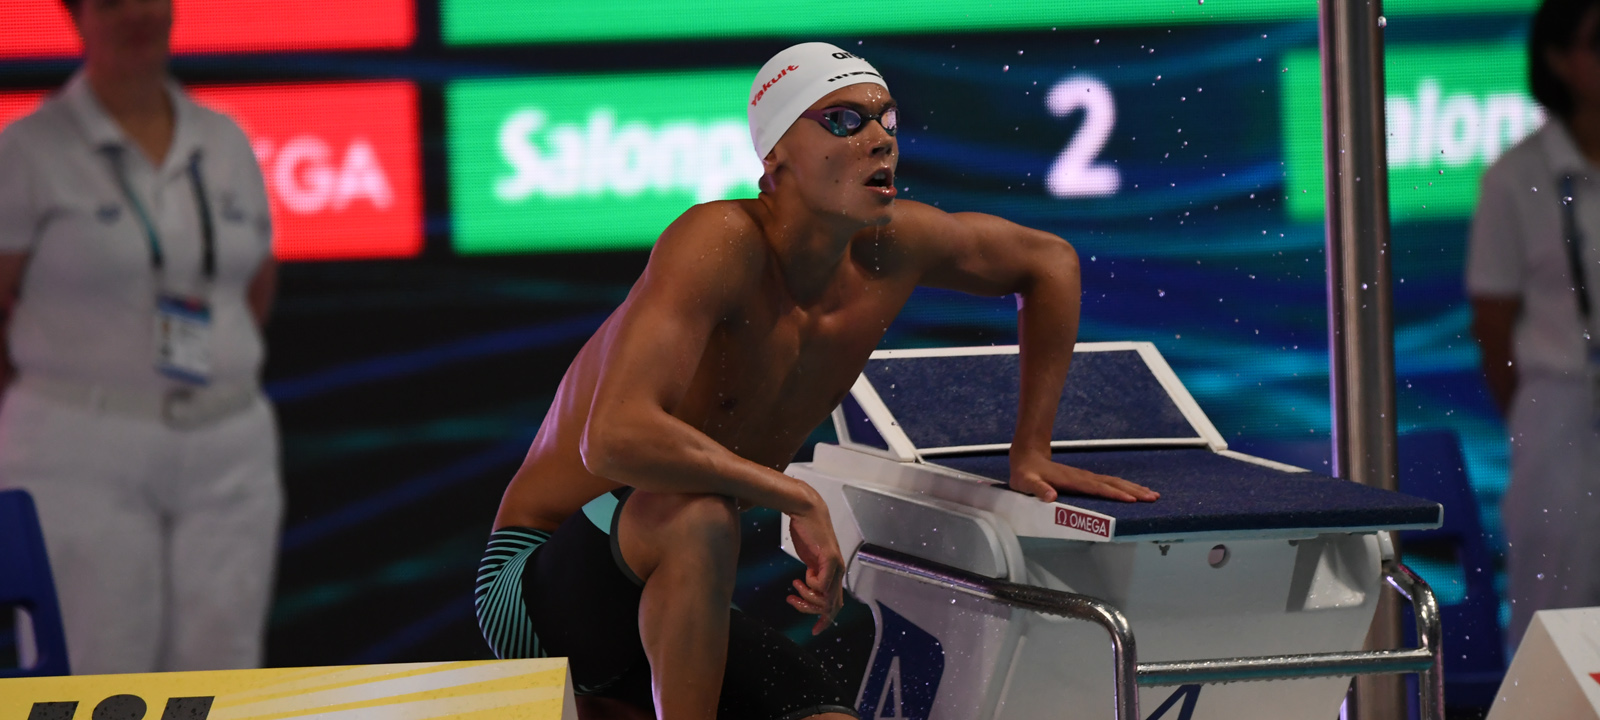 David Popovici schwimmt neuen Junioren-Weltrekord, als Schnellster ins Finale